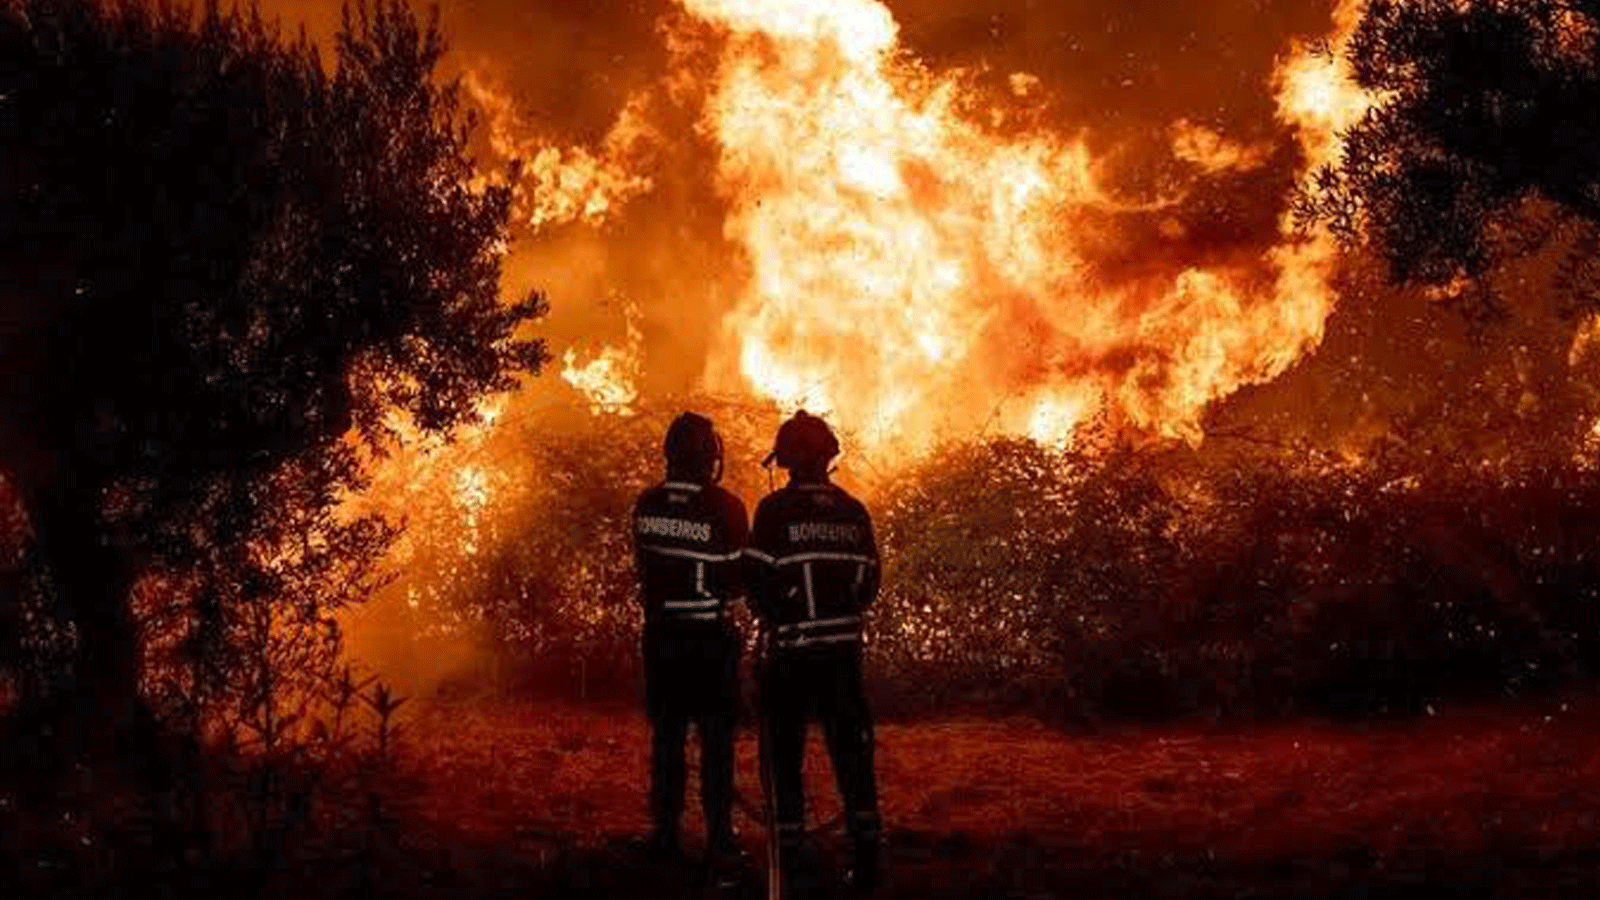 صورة لحرائق الغابات نشرها مغرّد عبر تويتر على صفحة بعنوان Yash بتاريخ 14 آب/أغسطس 2021